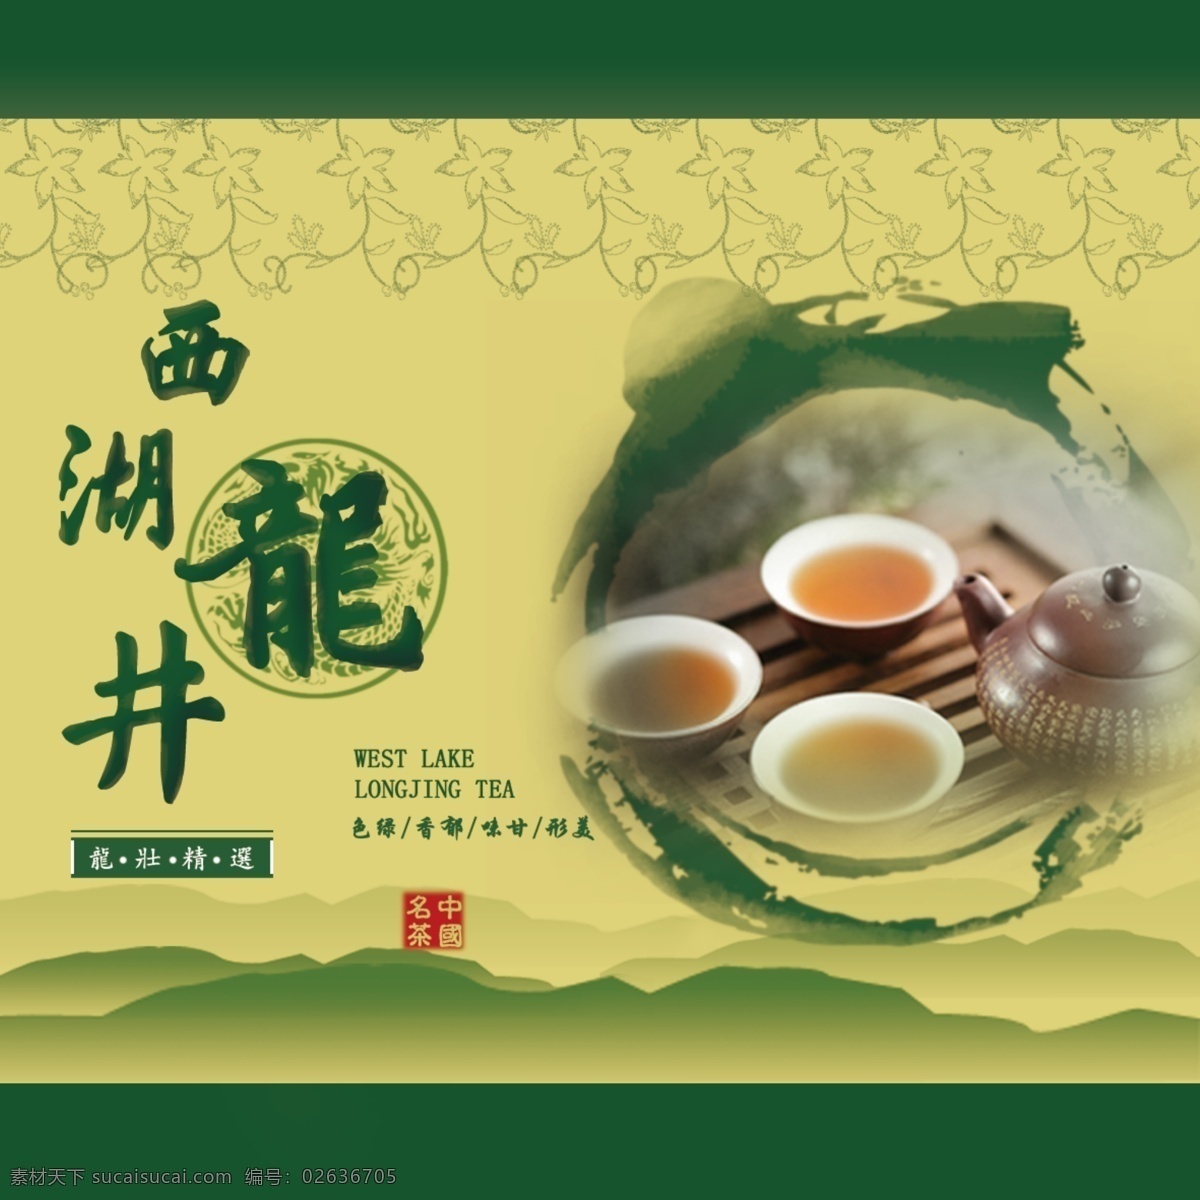 西湖 龙井茶 包装 正面 展示 图 古色古香 健康 绿茶 字效 包装设计 茶叶 特点 绿色 主题突出 立意新颖 注重 产品 黄色